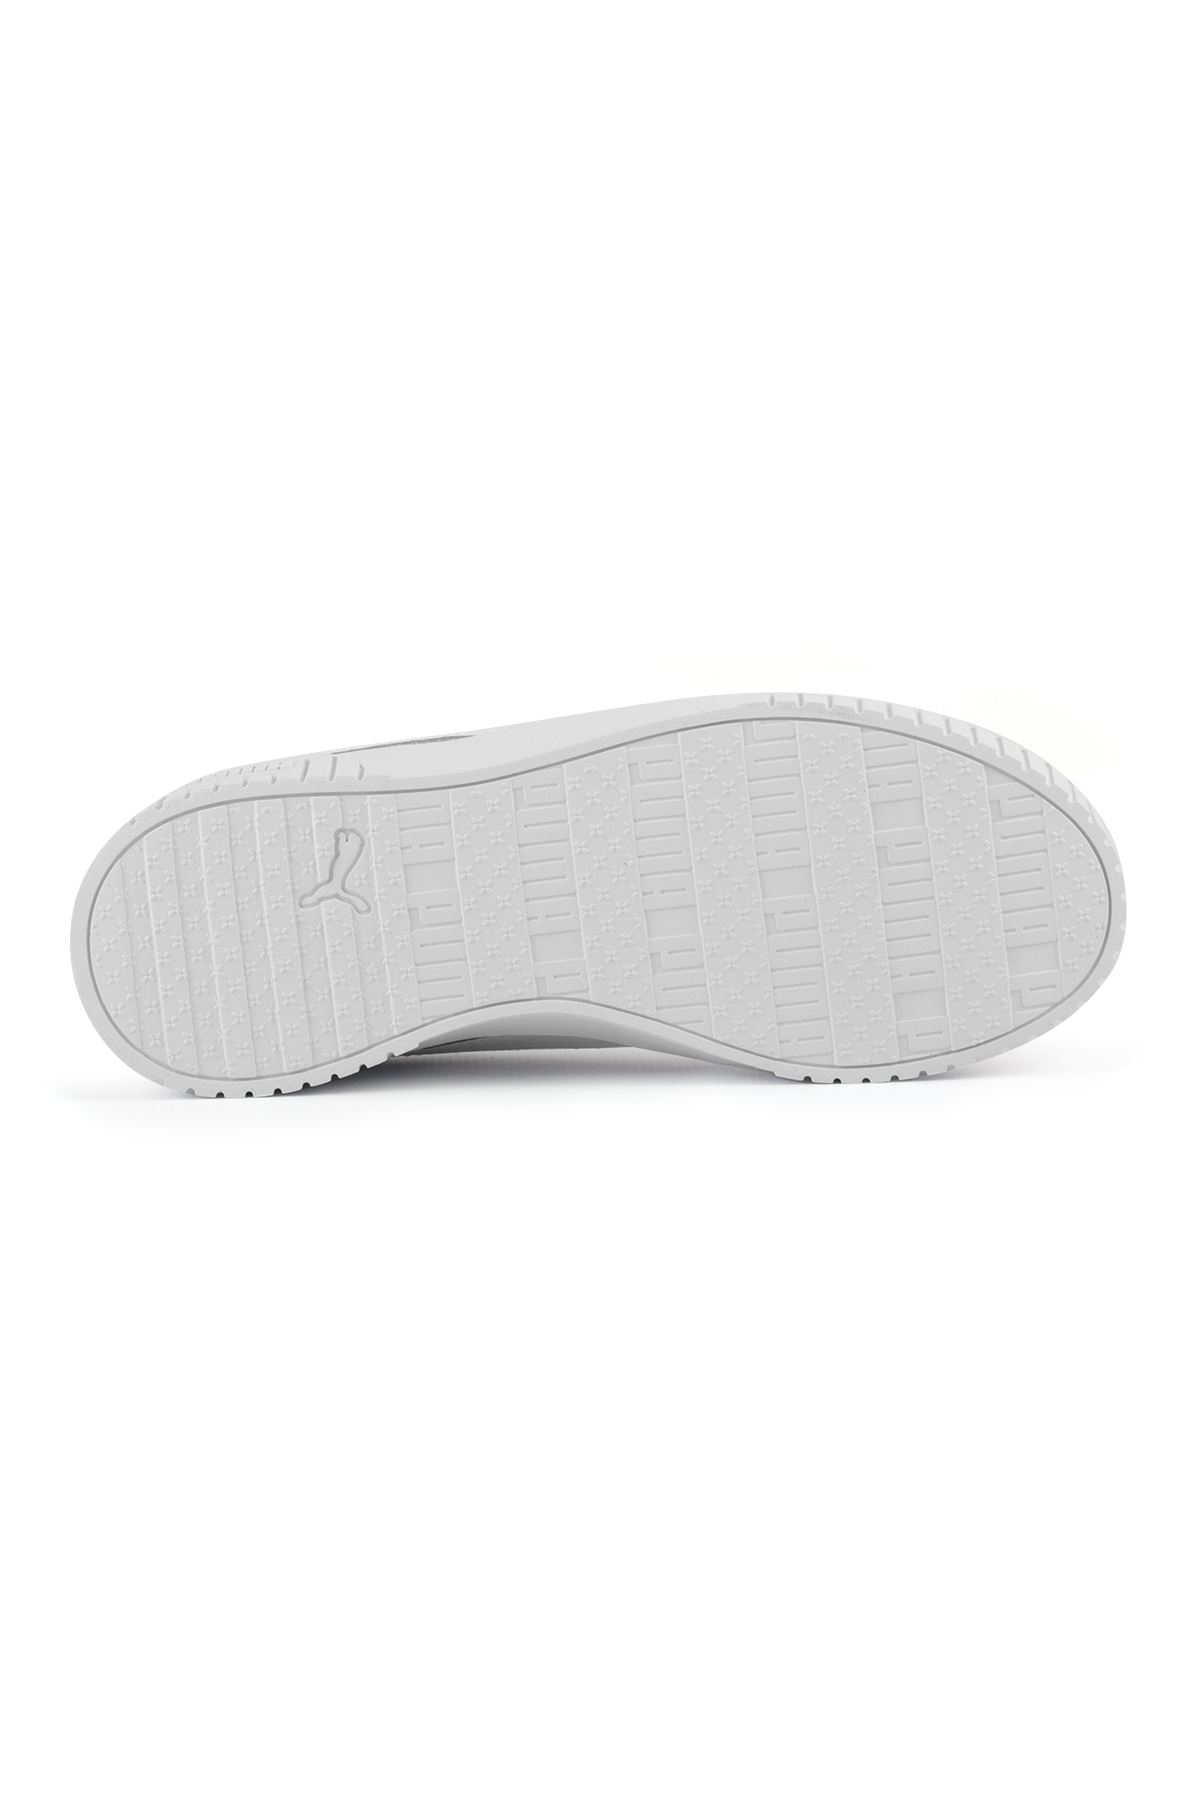 Puma Carine 2.0 Beyaz Erkek Spor Ayakkabı 